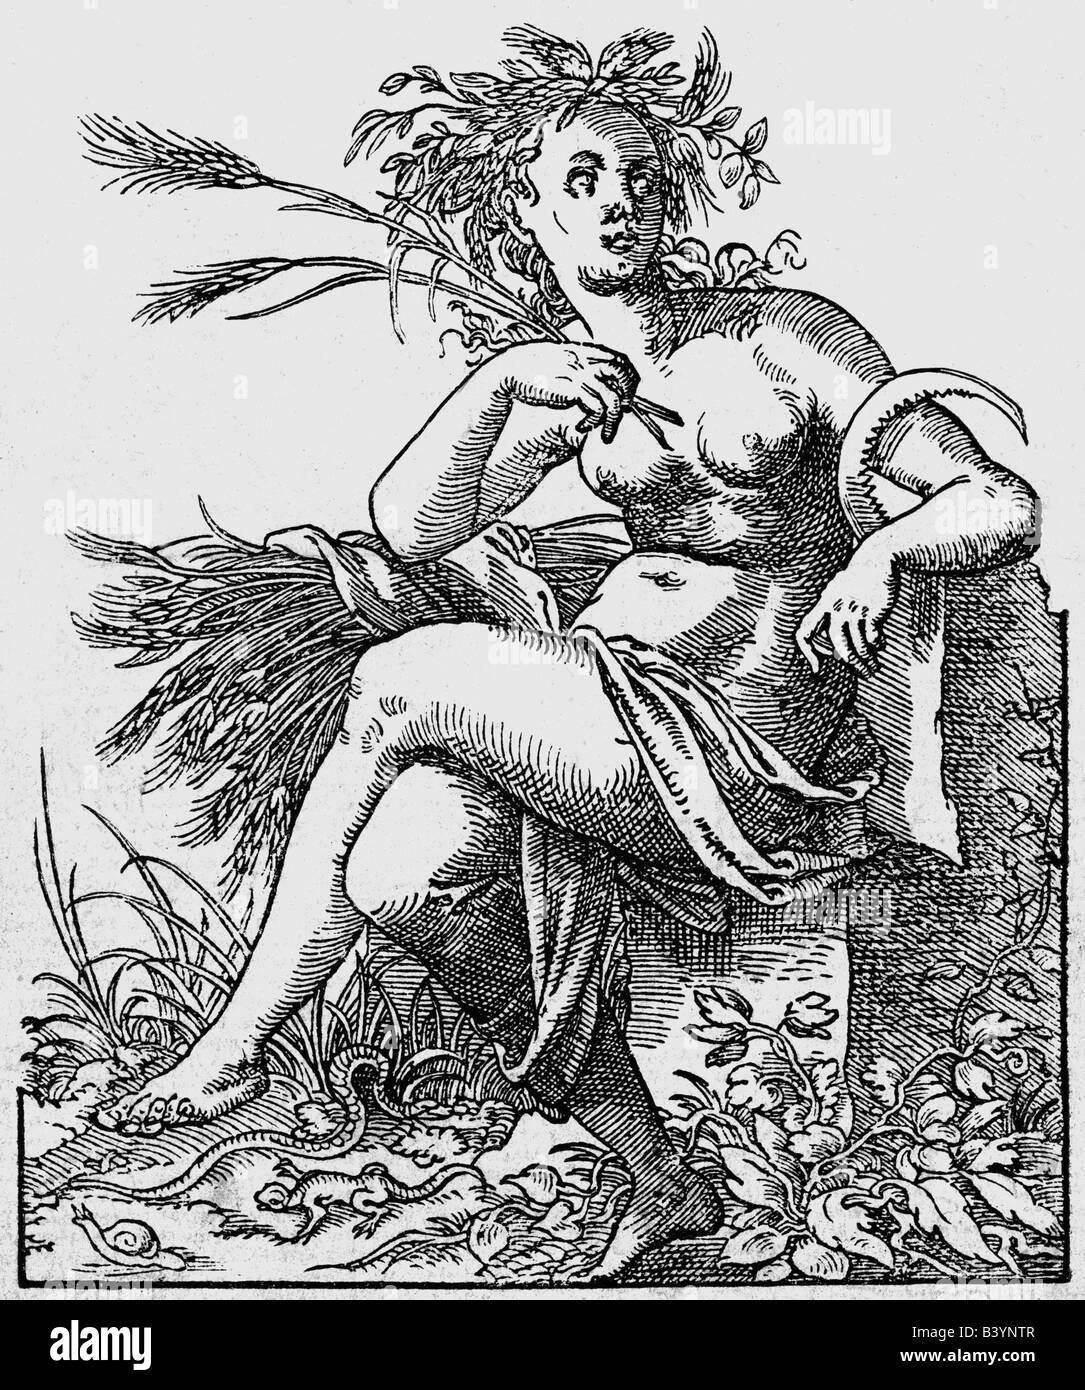 Internationalen Doktorandenprogramms Demeter, Göttin der Landwirtschaft, Kupferstich, 16. Jahrhundert, Artist's Urheberrecht nicht gelöscht werden Stockfoto